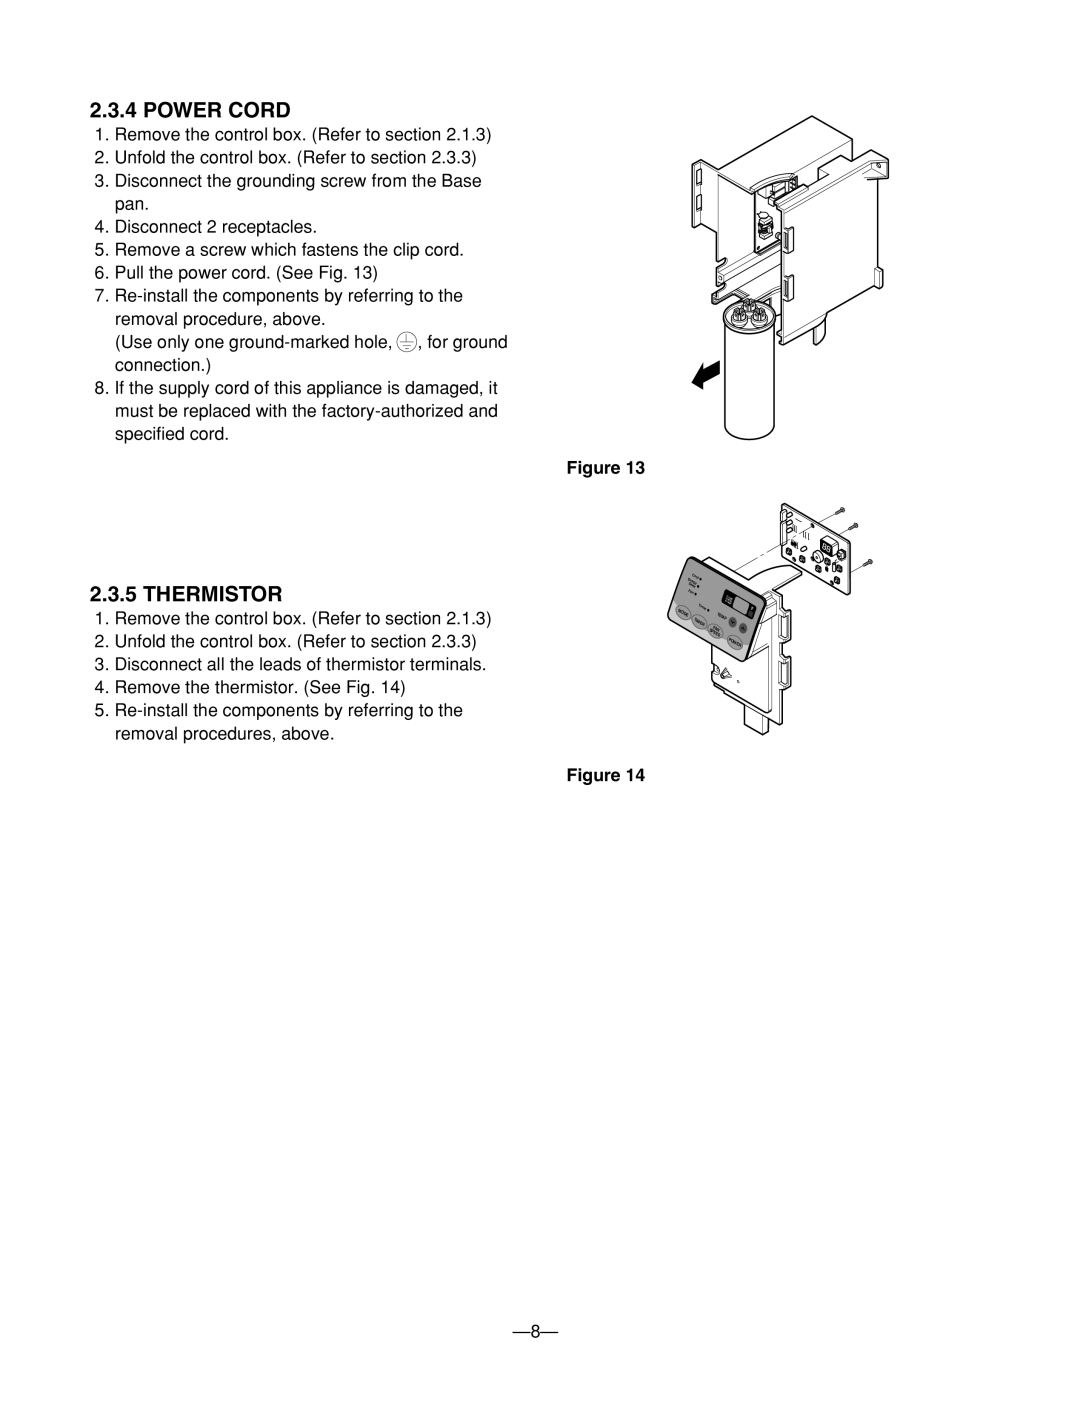 Heat Controller BG-101A, BG-81A, BG-123A service manual Power Cord, Thermistor 